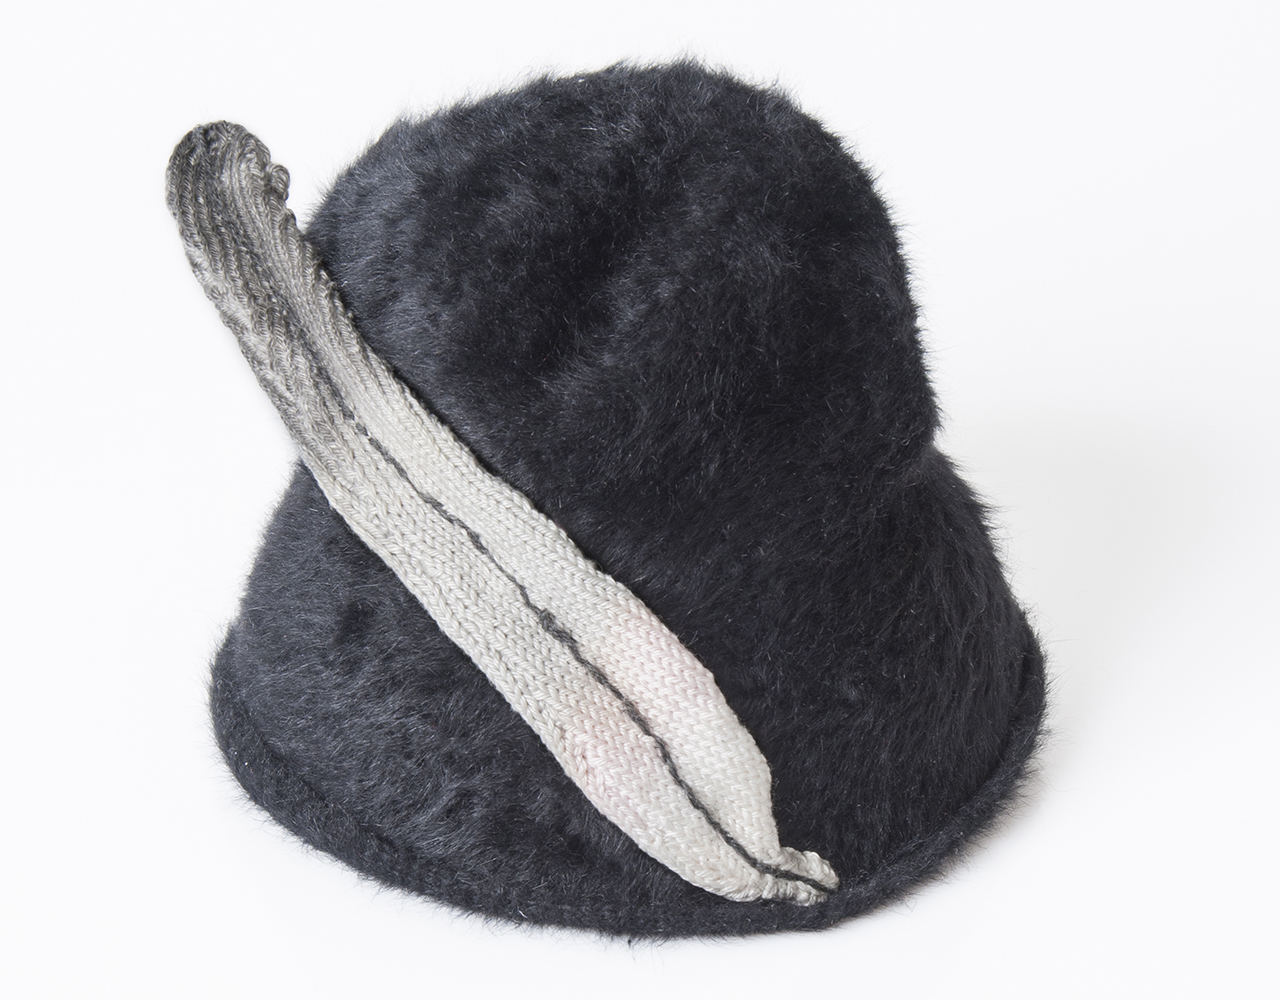 PHOTO: ©BCEE - Flavie Hengen
Feathers, 2014, plumes en textile, tricotés ou
nouées, sur chapeaux contemporains,
30 x 10 x 1 cm, pièce unique